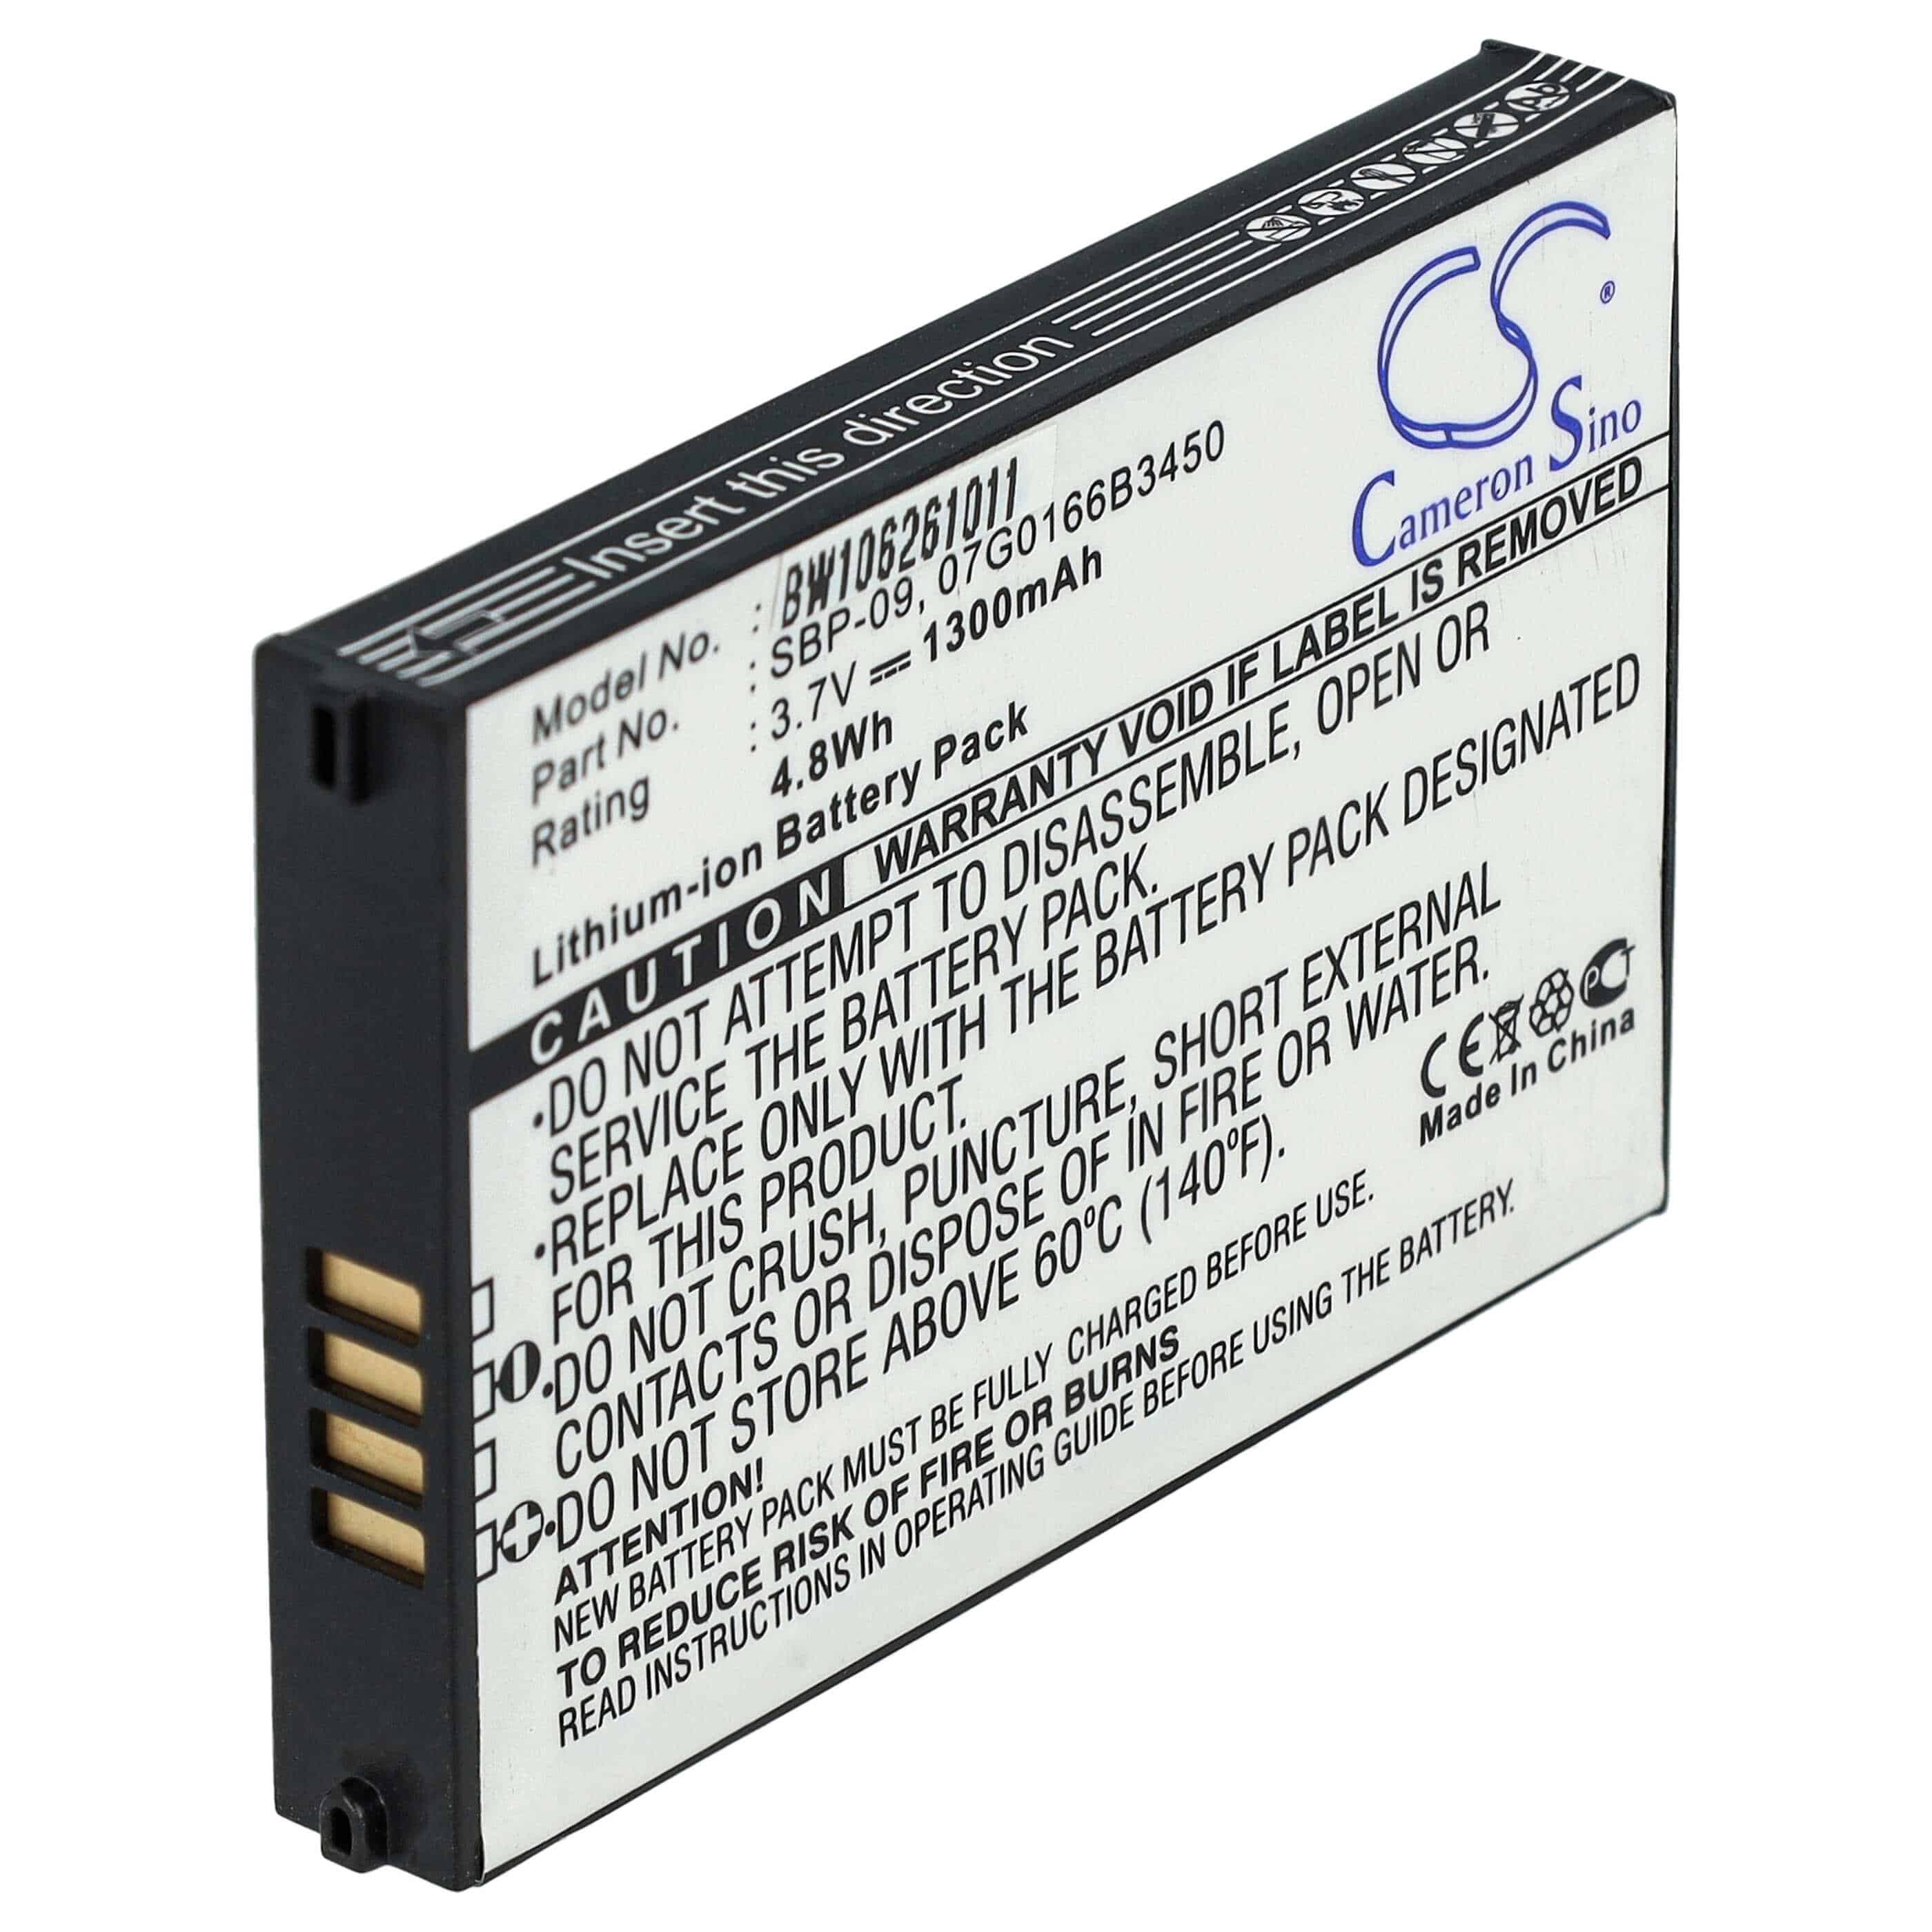 Batterie remplace Asus 07G0166B3450, SBP-09 pour téléphone portable - 1300mAh, 3,7V, Li-ion